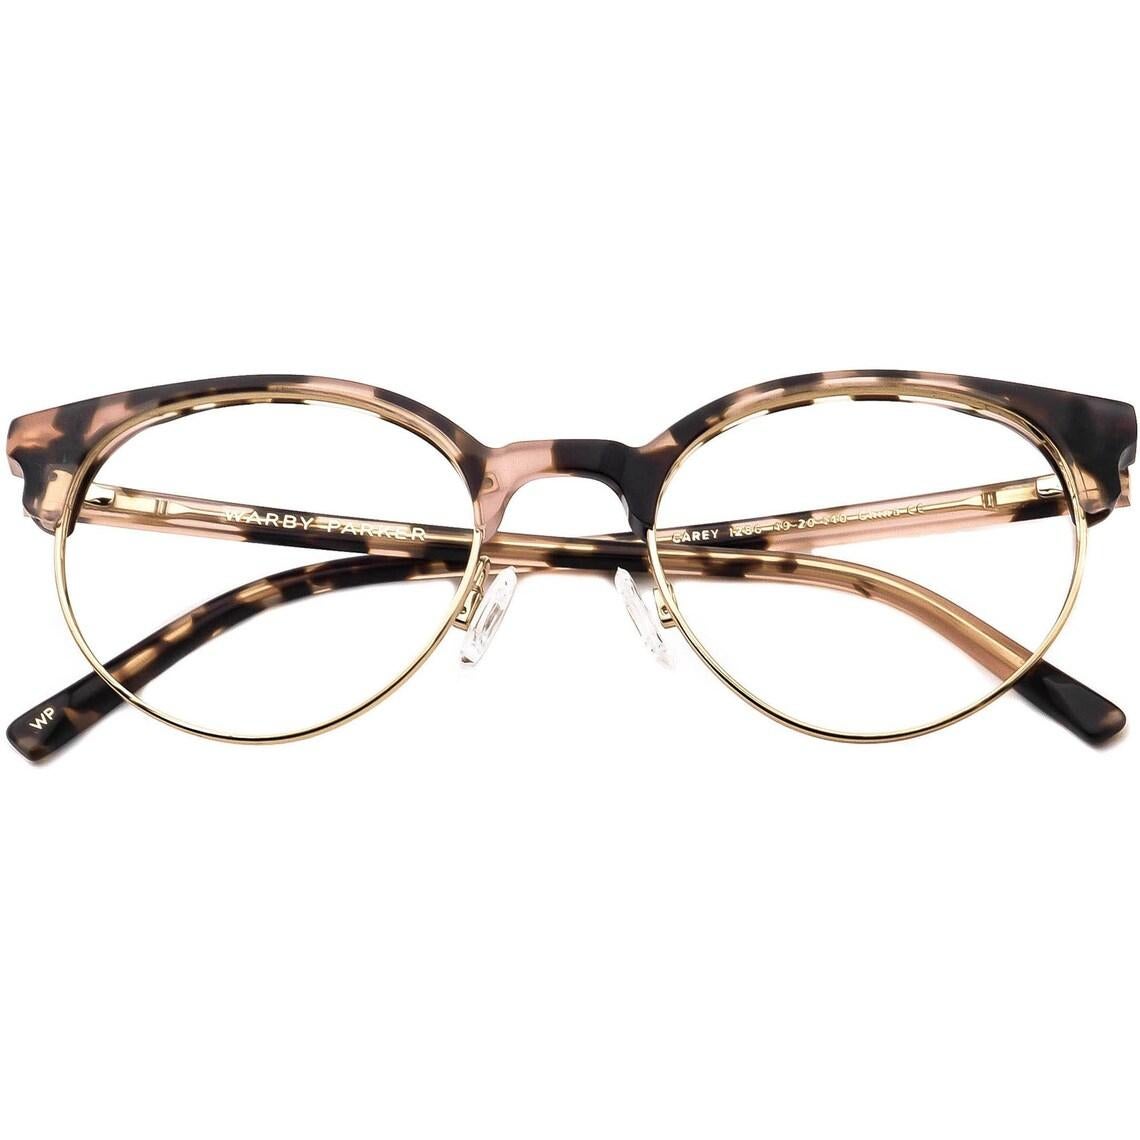 Warby Parker Eyeglasses Carey 1286 Pink Tortoise/Gold Round Frame 49[]20 140 For Sale 3